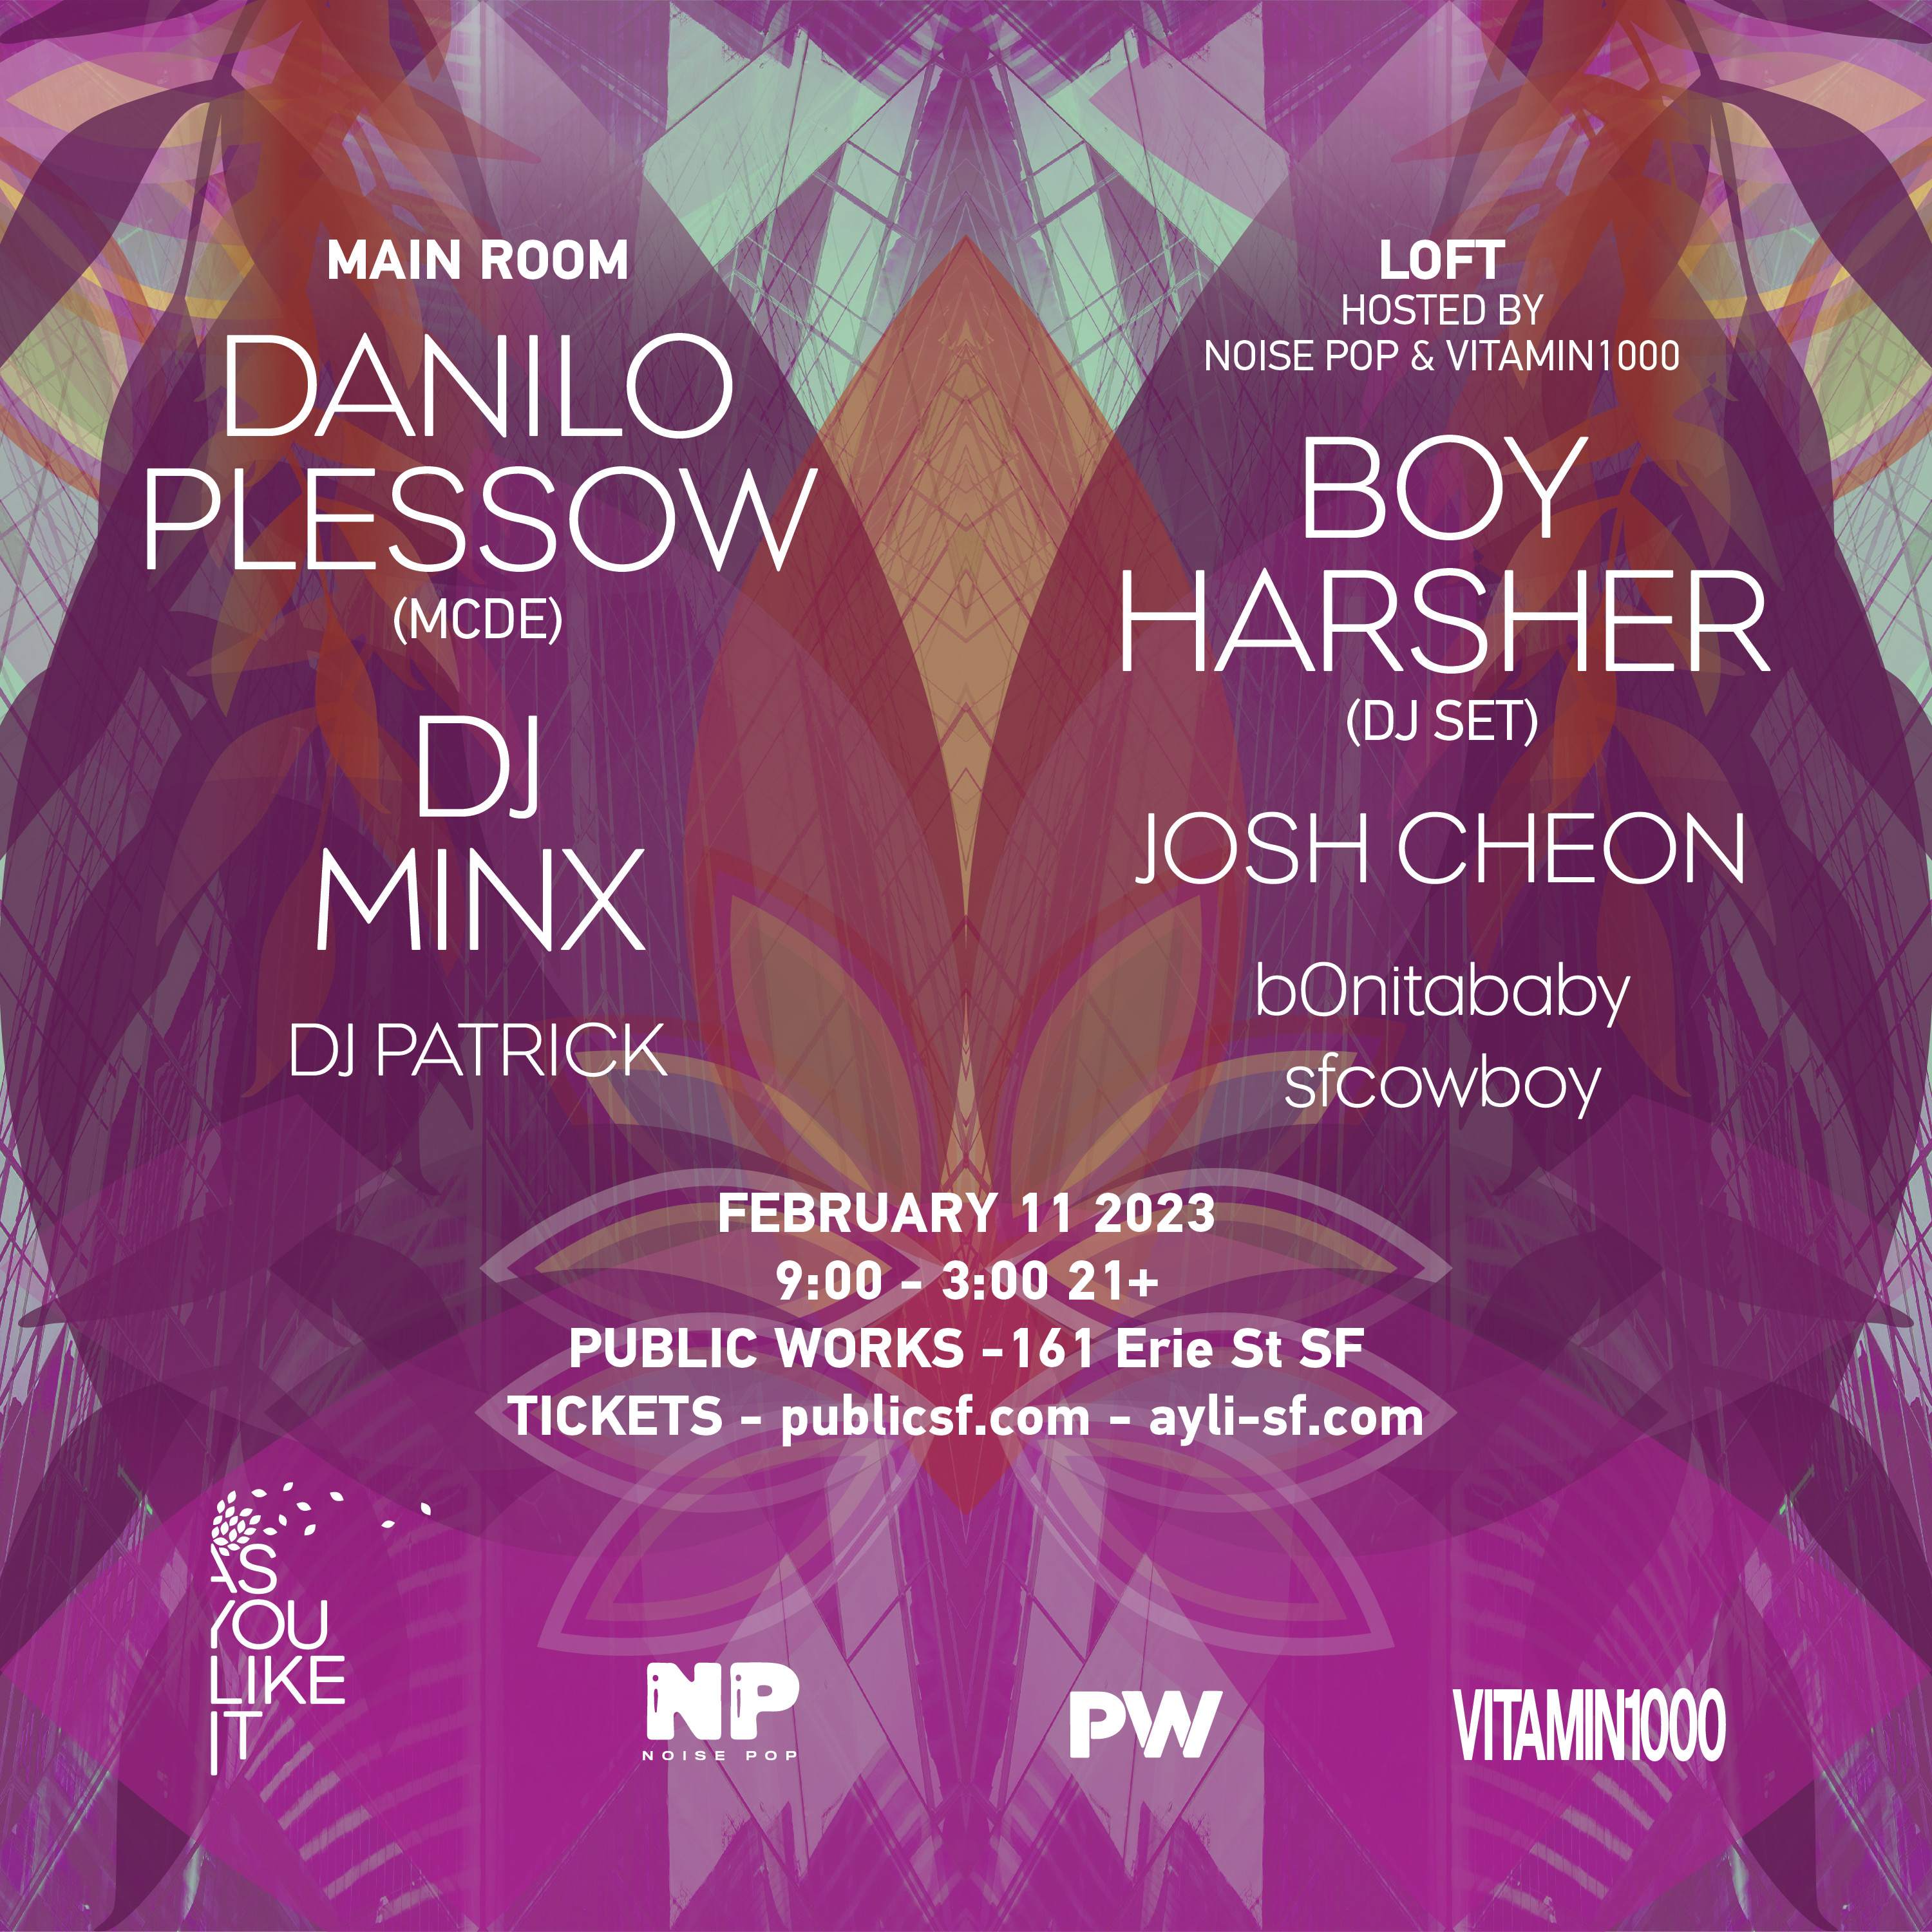 AYLI & PW present Danilo Plessow AKA Motor City Drum Ensemble, DJ Minx, & Boy Harsher (DJ Set) - Página frontal